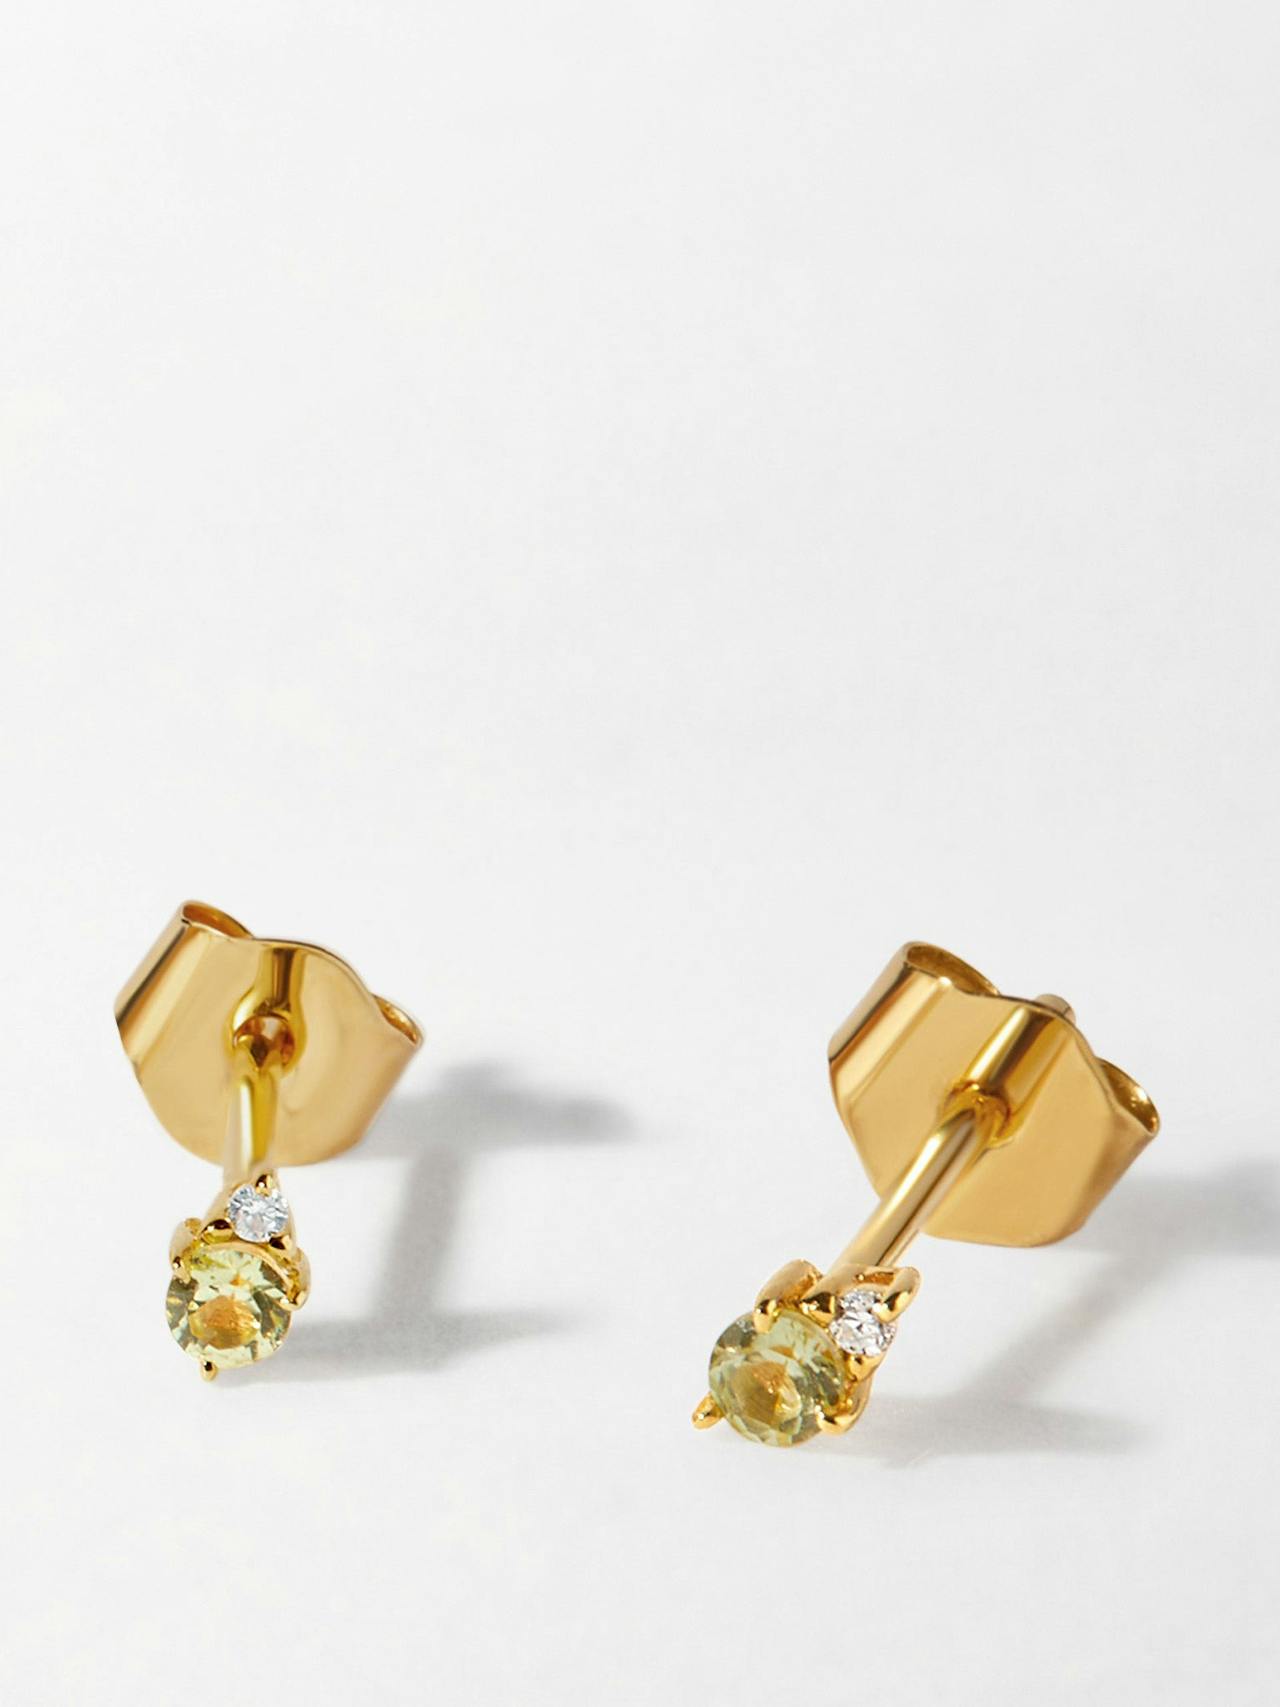 Peridot diamond stud earrings